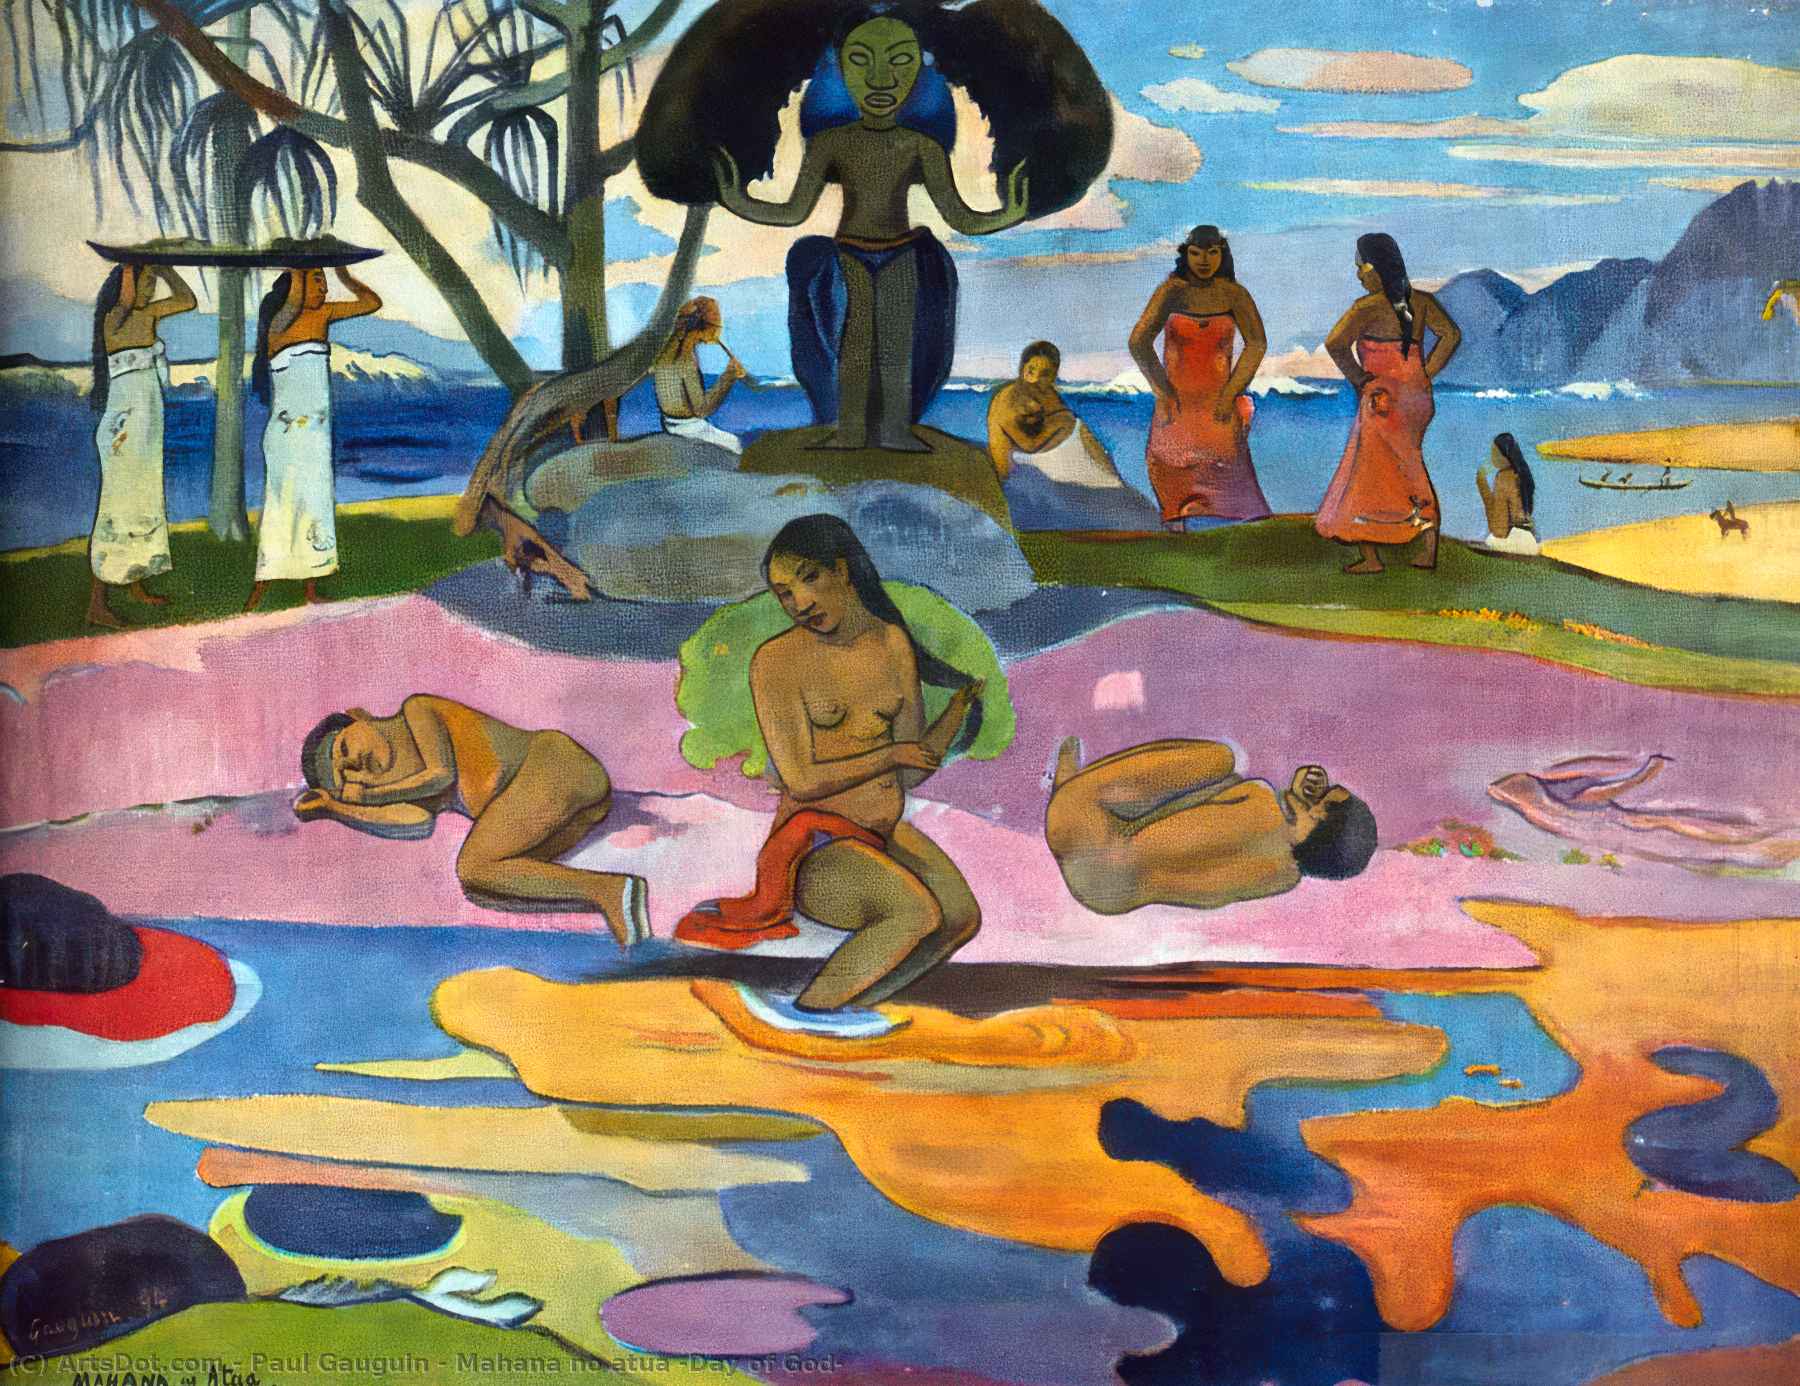 Order Artwork Replica Mahana no atua (Day of God) by Paul Gauguin (1848-1903, France) | ArtsDot.com